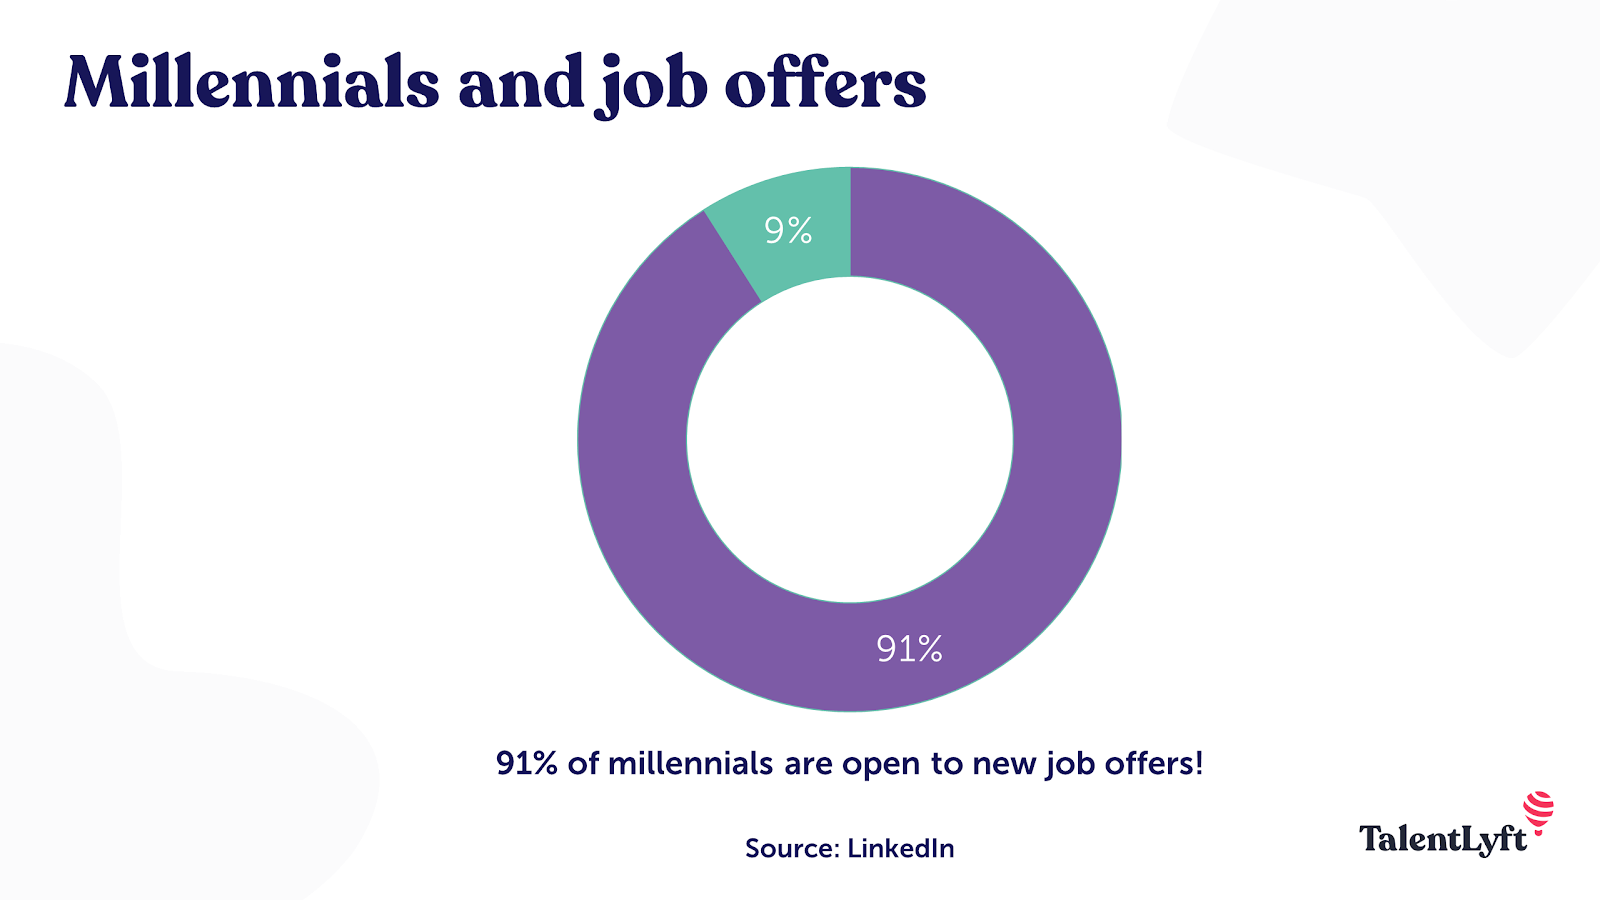 Millennials job offers and job hopping